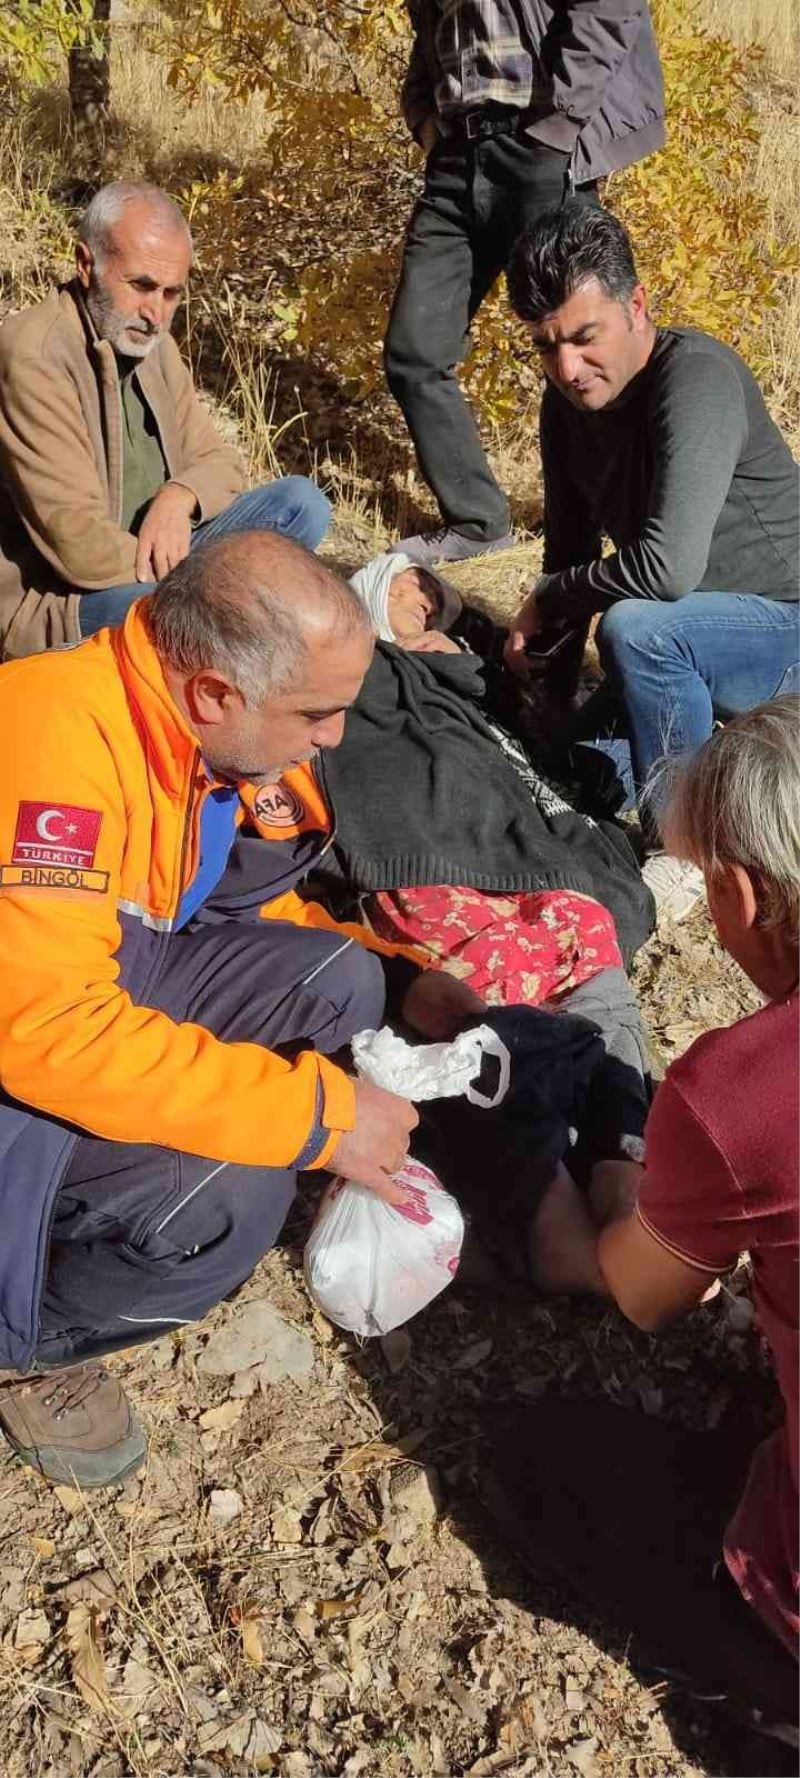 Bingöl’de kuşburnu toplanken kaybolan yaşlı kadın bulundu
